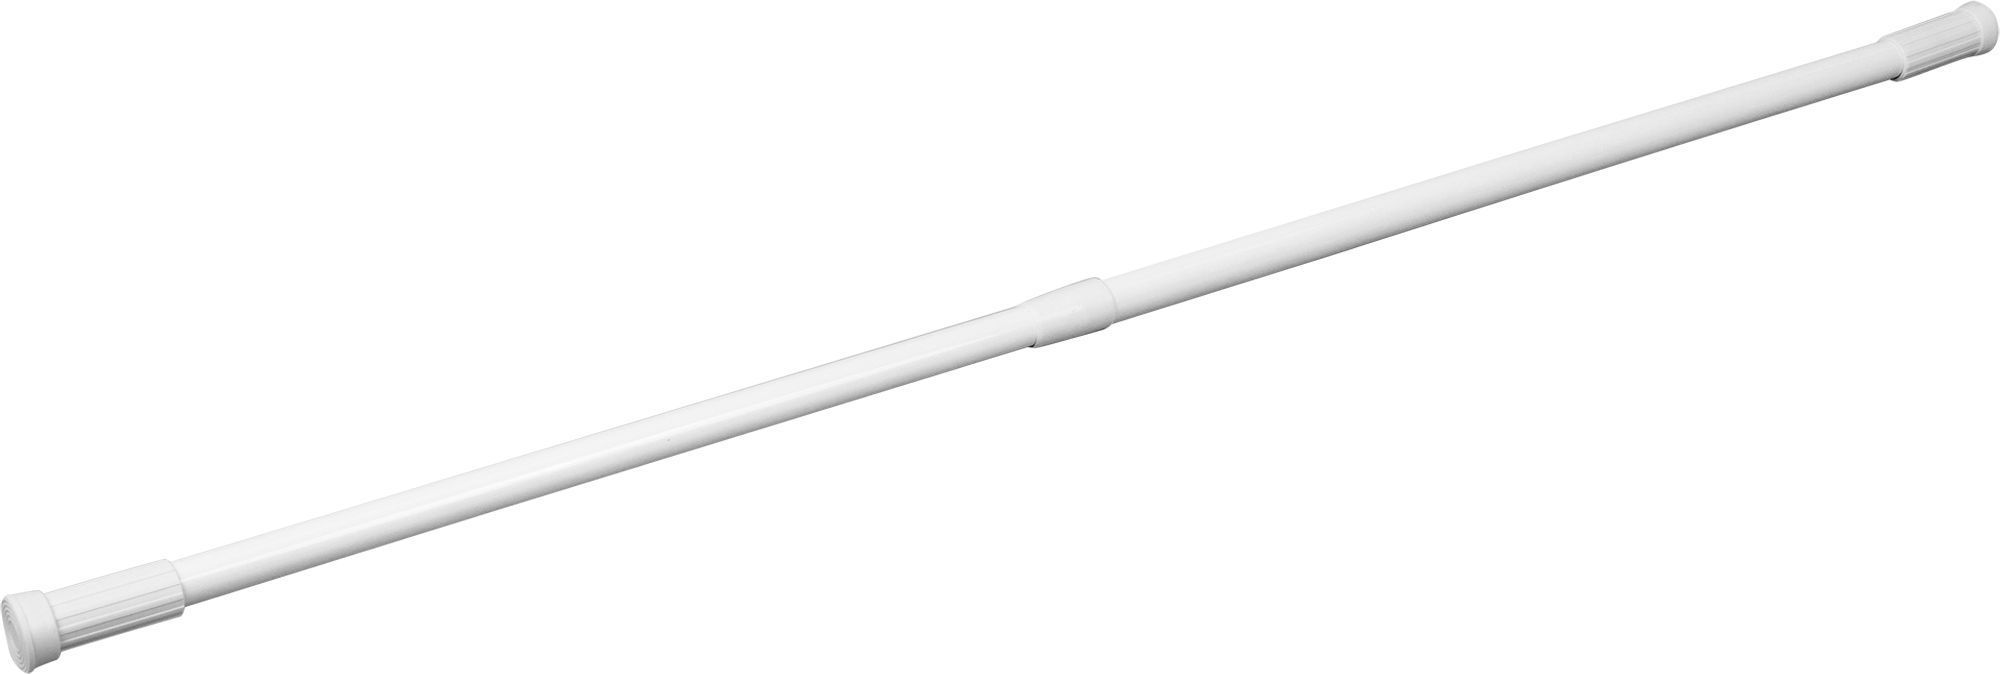 Карниз для ванной vidage, телескопический,цвет: белый, длина 110-200 см